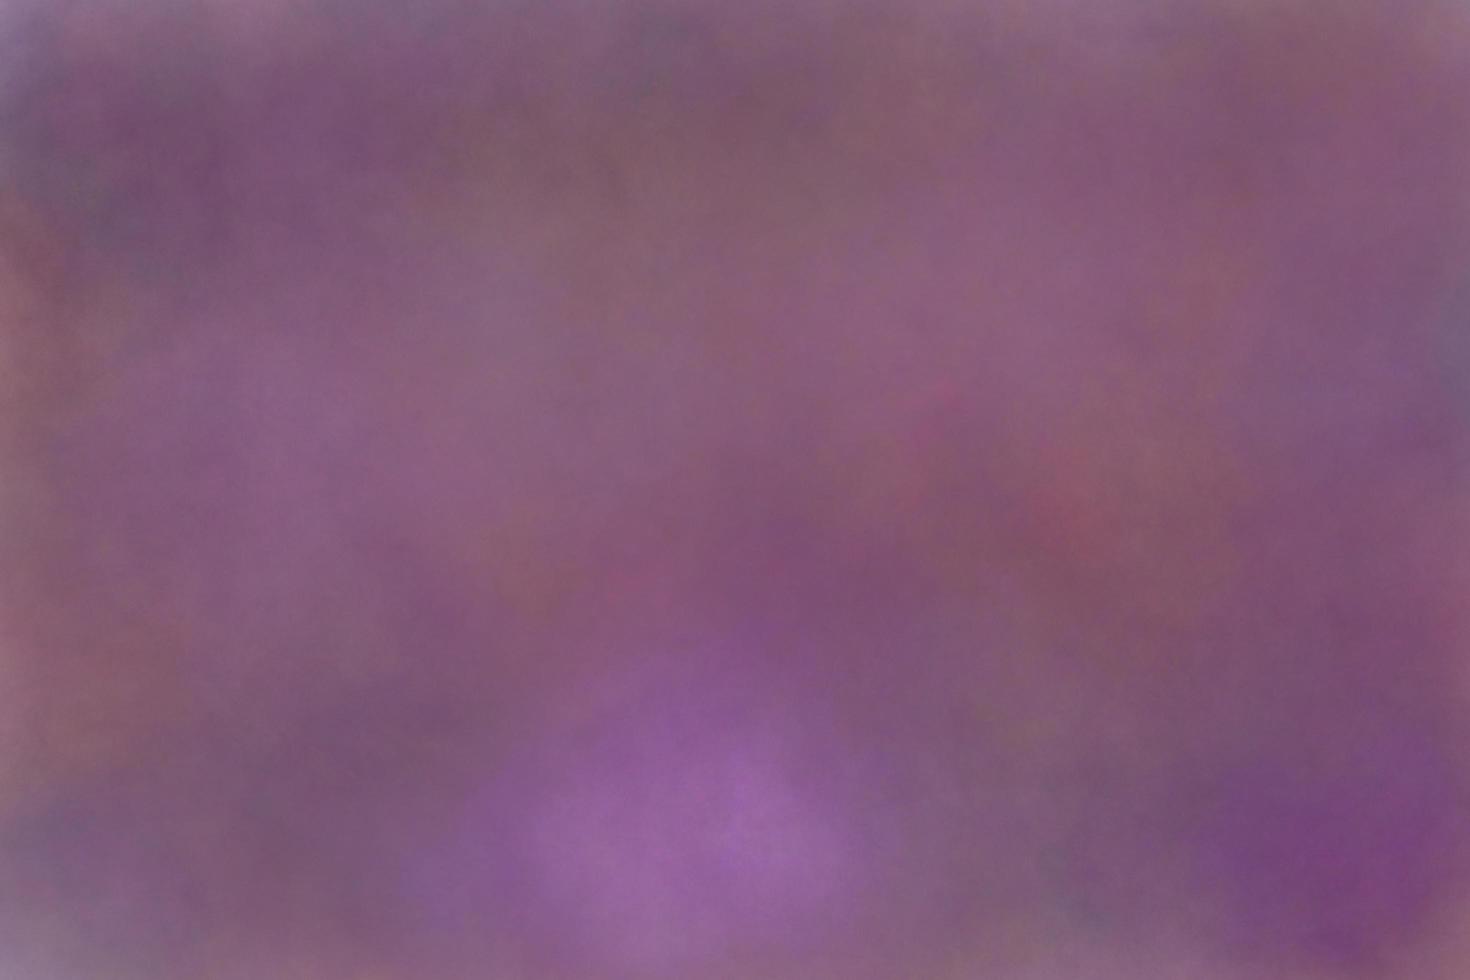 gestempeld donkere violette kleur op witte achtergrond door programma computer, abstracte kunst ruwe textuur artwork. hedendaagse kunst, monotoon artistiek papier canvas, ruimte voor frame kopie schrijven briefkaart foto